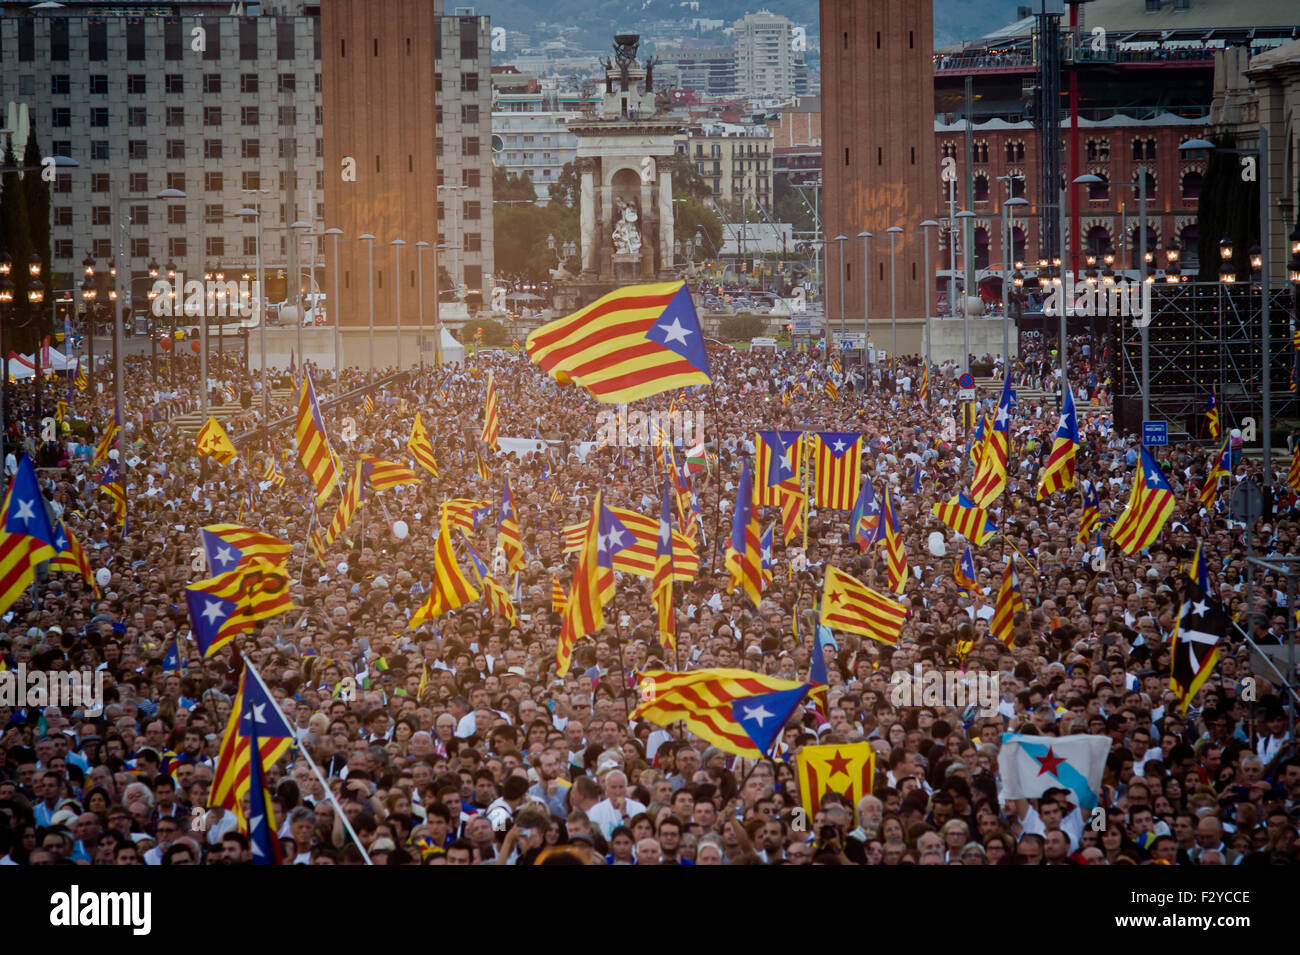 Barcelone, Catalogne, Espagne. 25 Septembre, 2015. Drapeaux indépendantistes catalans (Estelades) sont vus au cours de la dernière campagne de rallye 'Junts pel Si' (ensemble pour Oui) à Barcelone le 25 septembre, 2015. Dimanche prochain auront lieu des élections régionales en Catalogne. Les sondages indiquent que l'indépendance parties pourraient obtenir la majorité absolue. Crédit : Jordi Boixareu/ZUMA/Alamy Fil Live News Banque D'Images